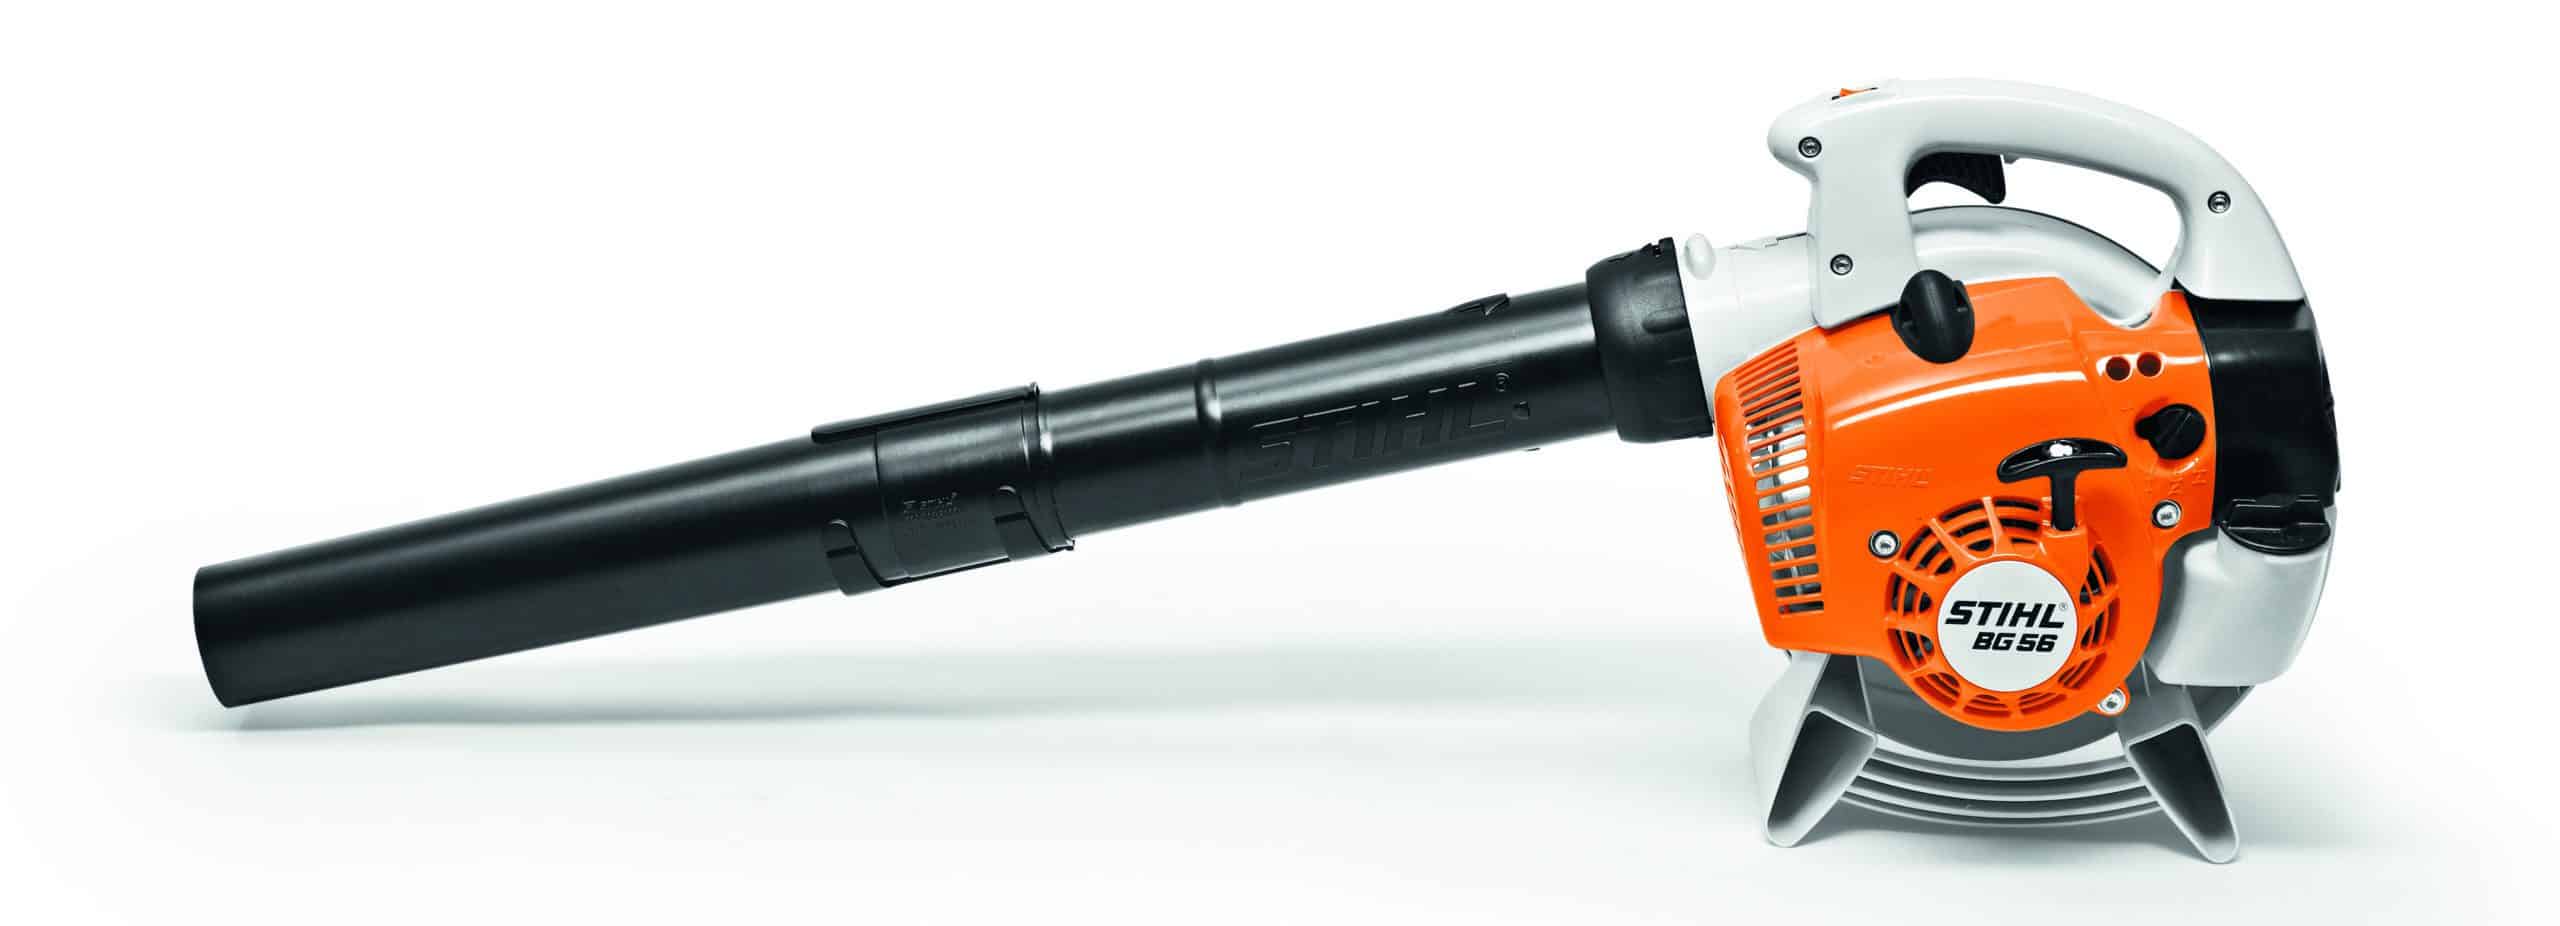 Stihl BG56 C-E leaf blower